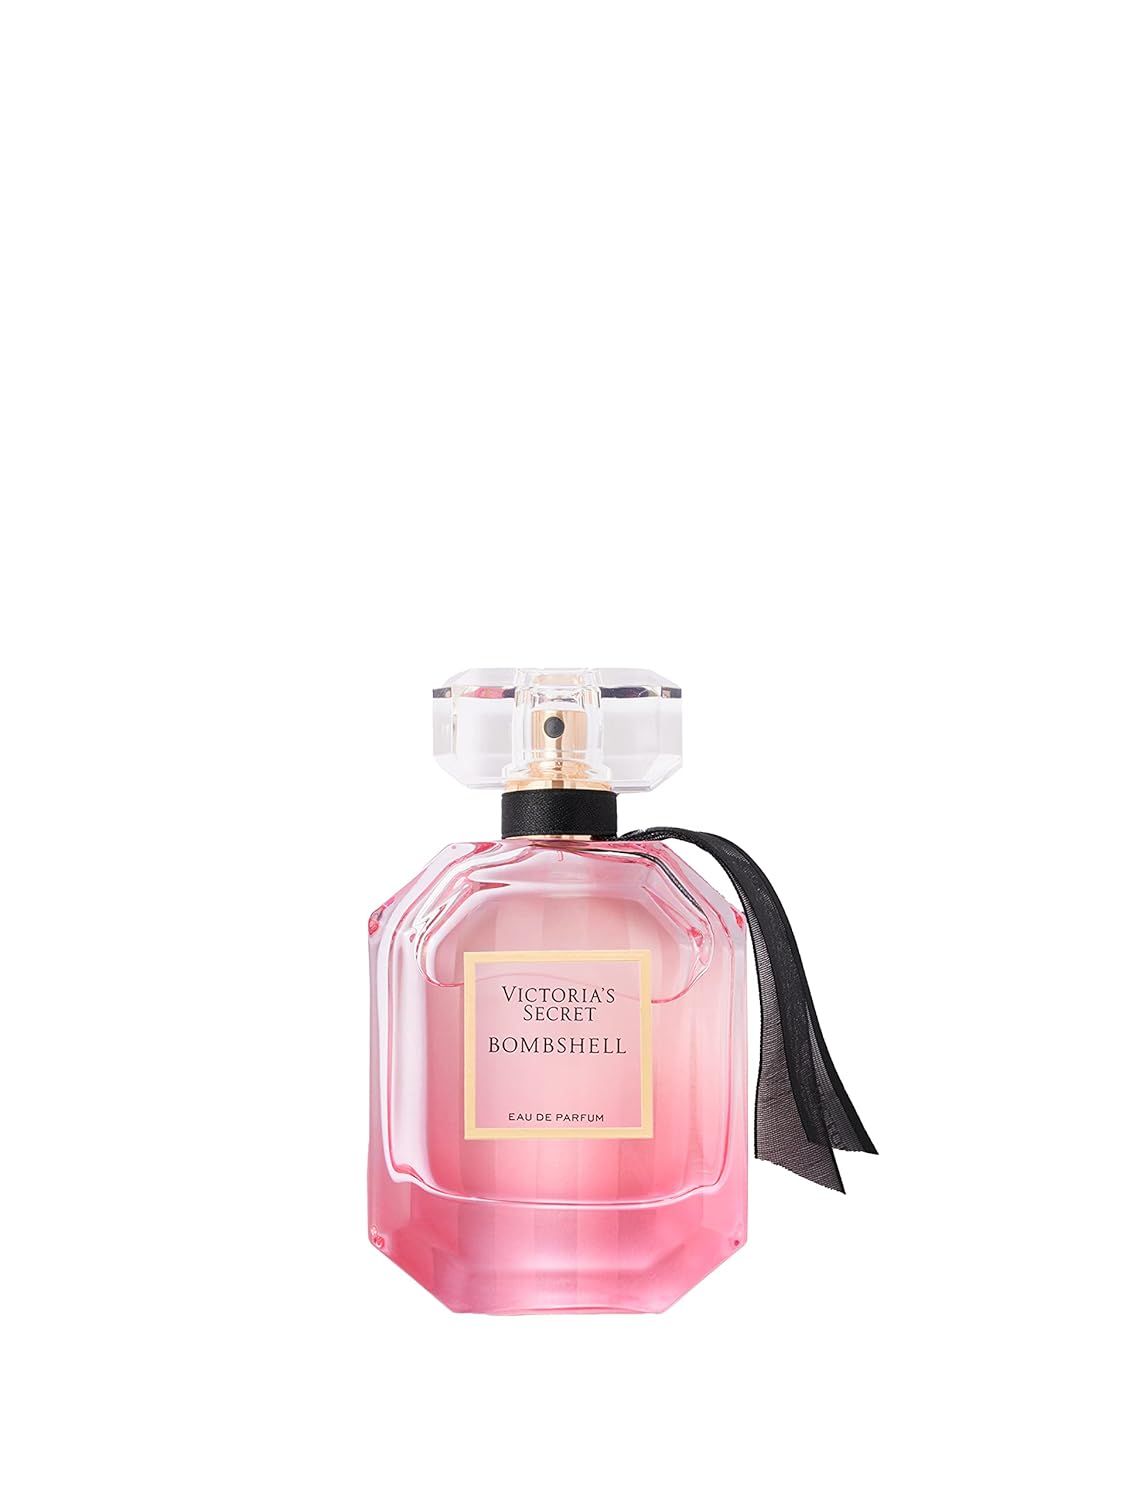 Victoria's Secret Bombshell 1.7oz Eau de Parfum | Amazon (US)